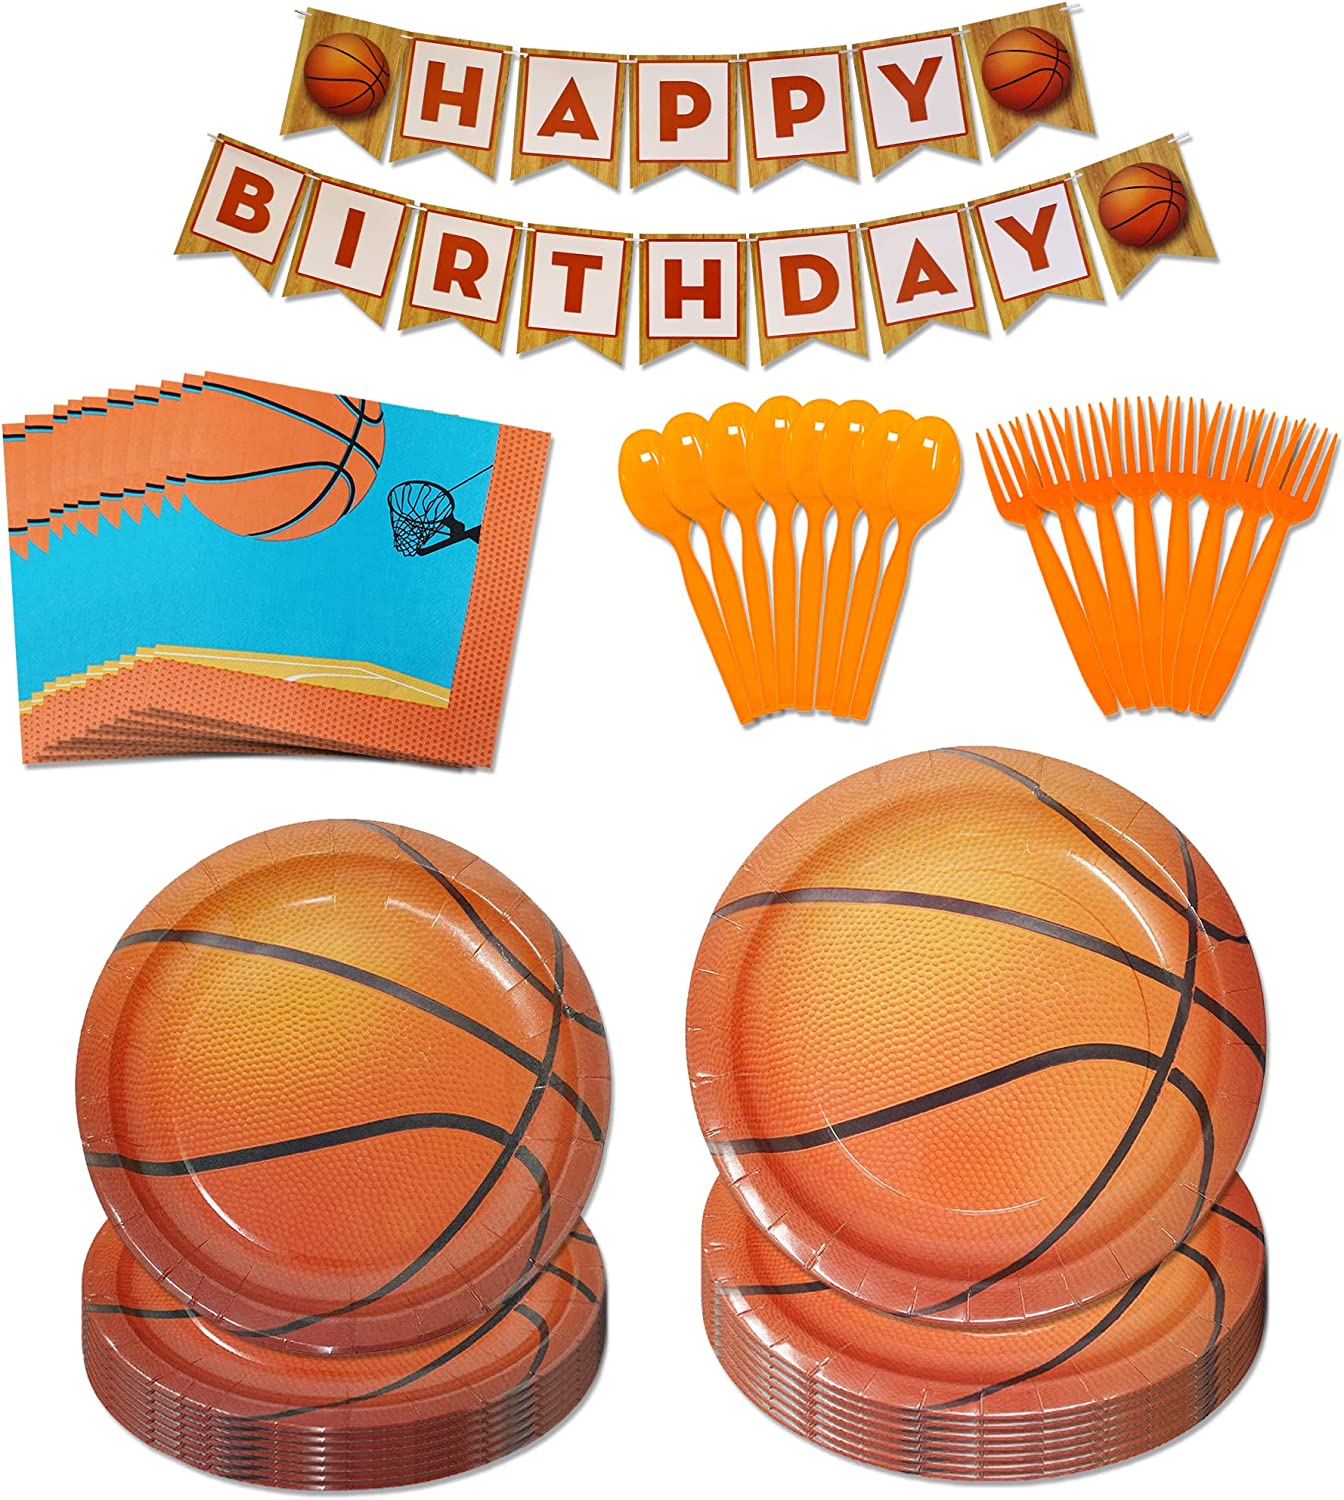 basketball vibrant dinner plates, hardwood style dessert plates, basketball lunch napkins, happy birthday banner, orange plastic spoons, orange plastic forks